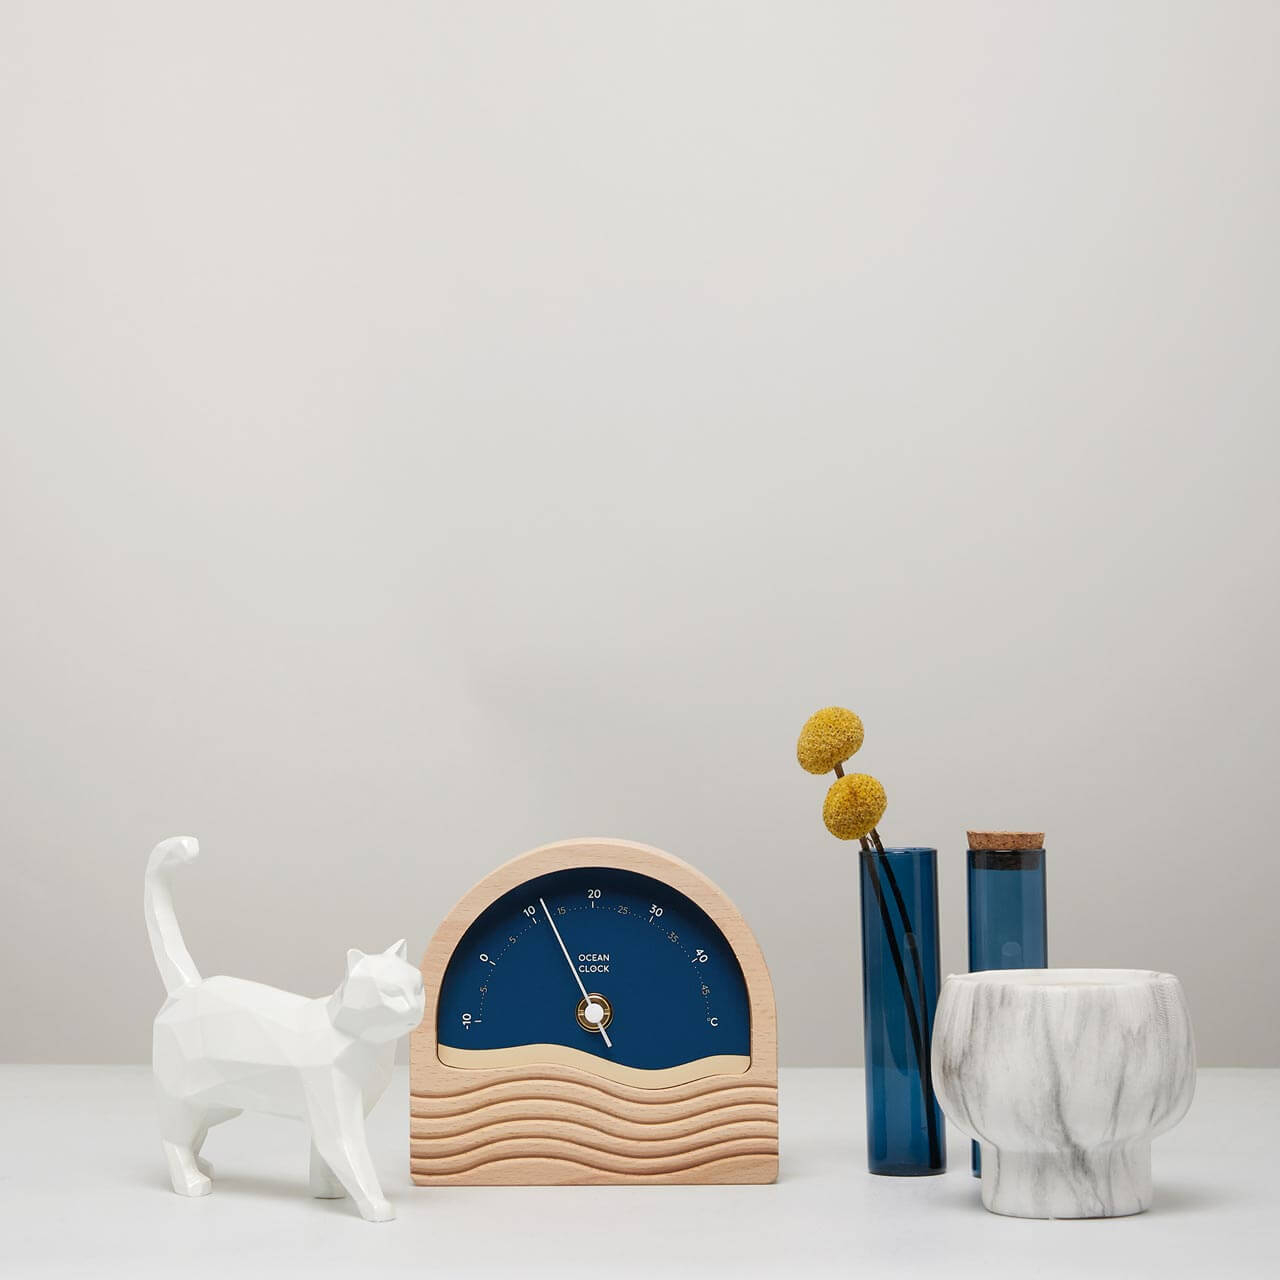 thermomètre celsius en bois avec cadran bleu marine posé sur table